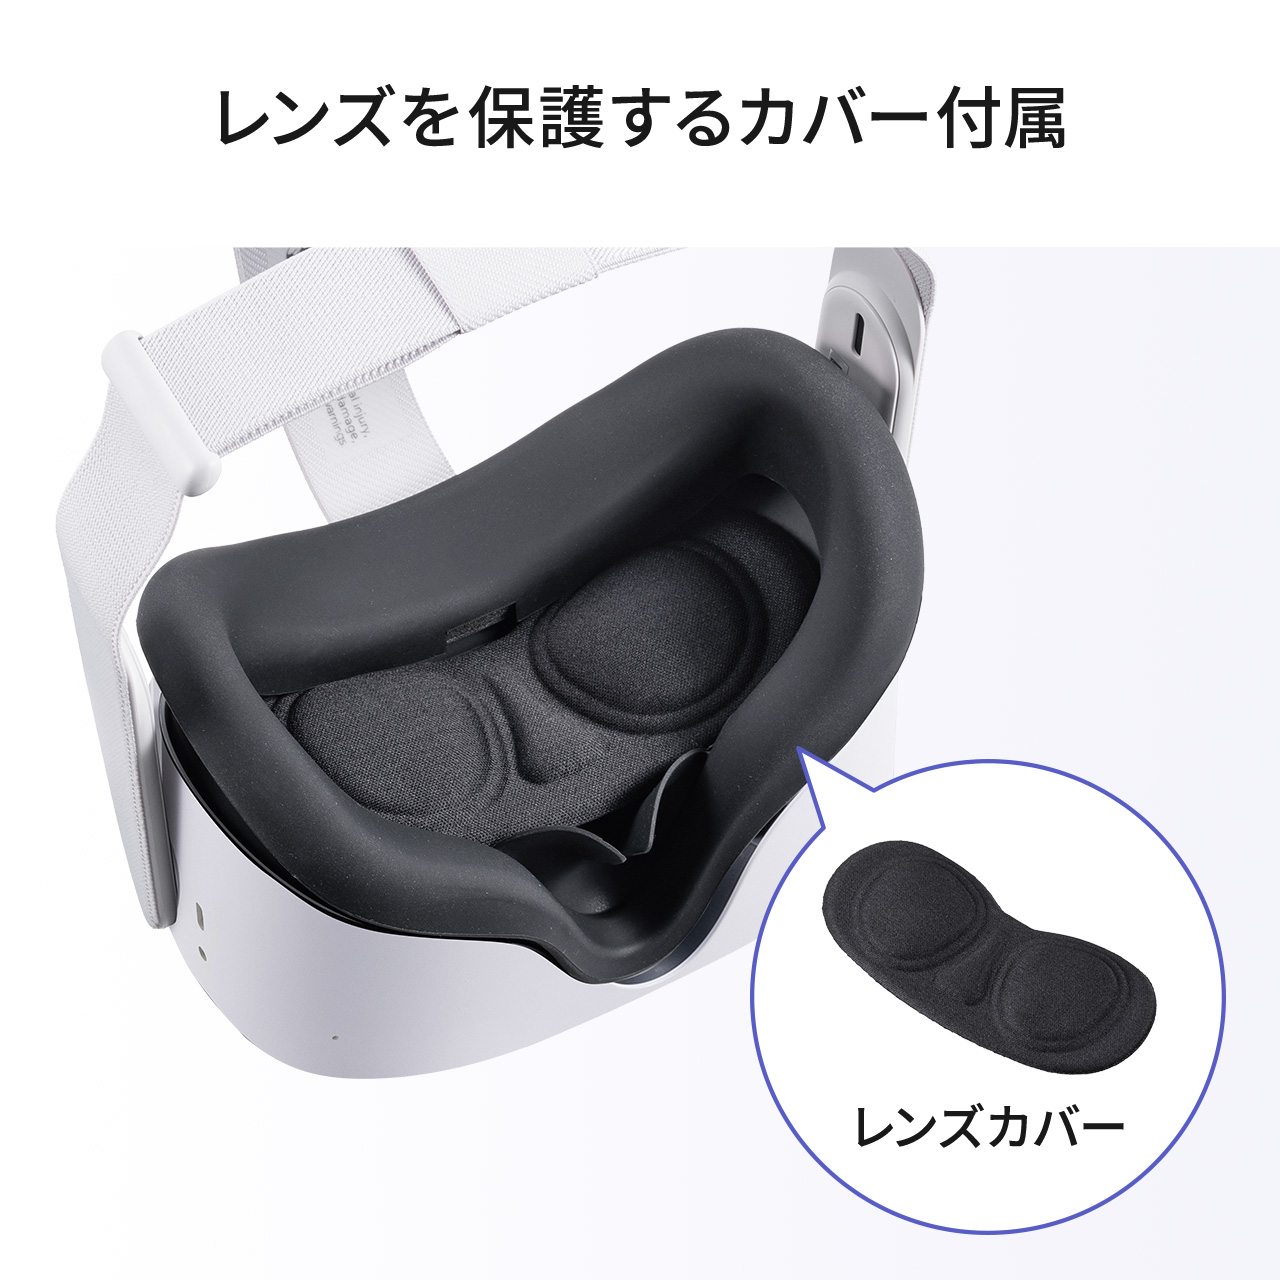 PS VR 【美品】シリコンカバー付き